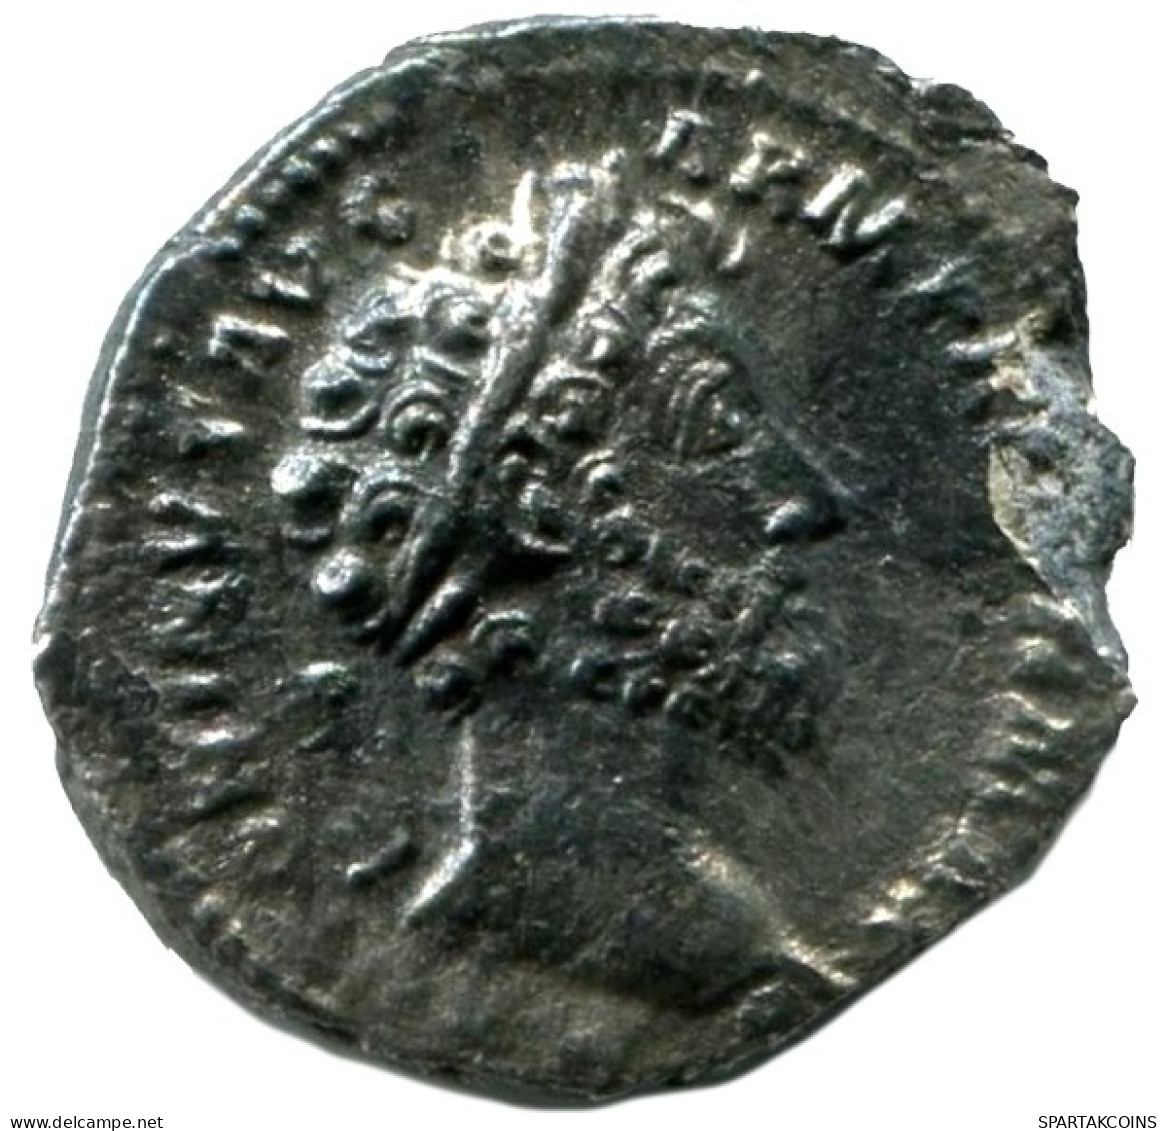 ANTONINUS PIUS AR DENARIUS AD 148-149 Ancient ROMAN Coin #ANC12331.78.U.A - The Anthonines (96 AD Tot 192 AD)